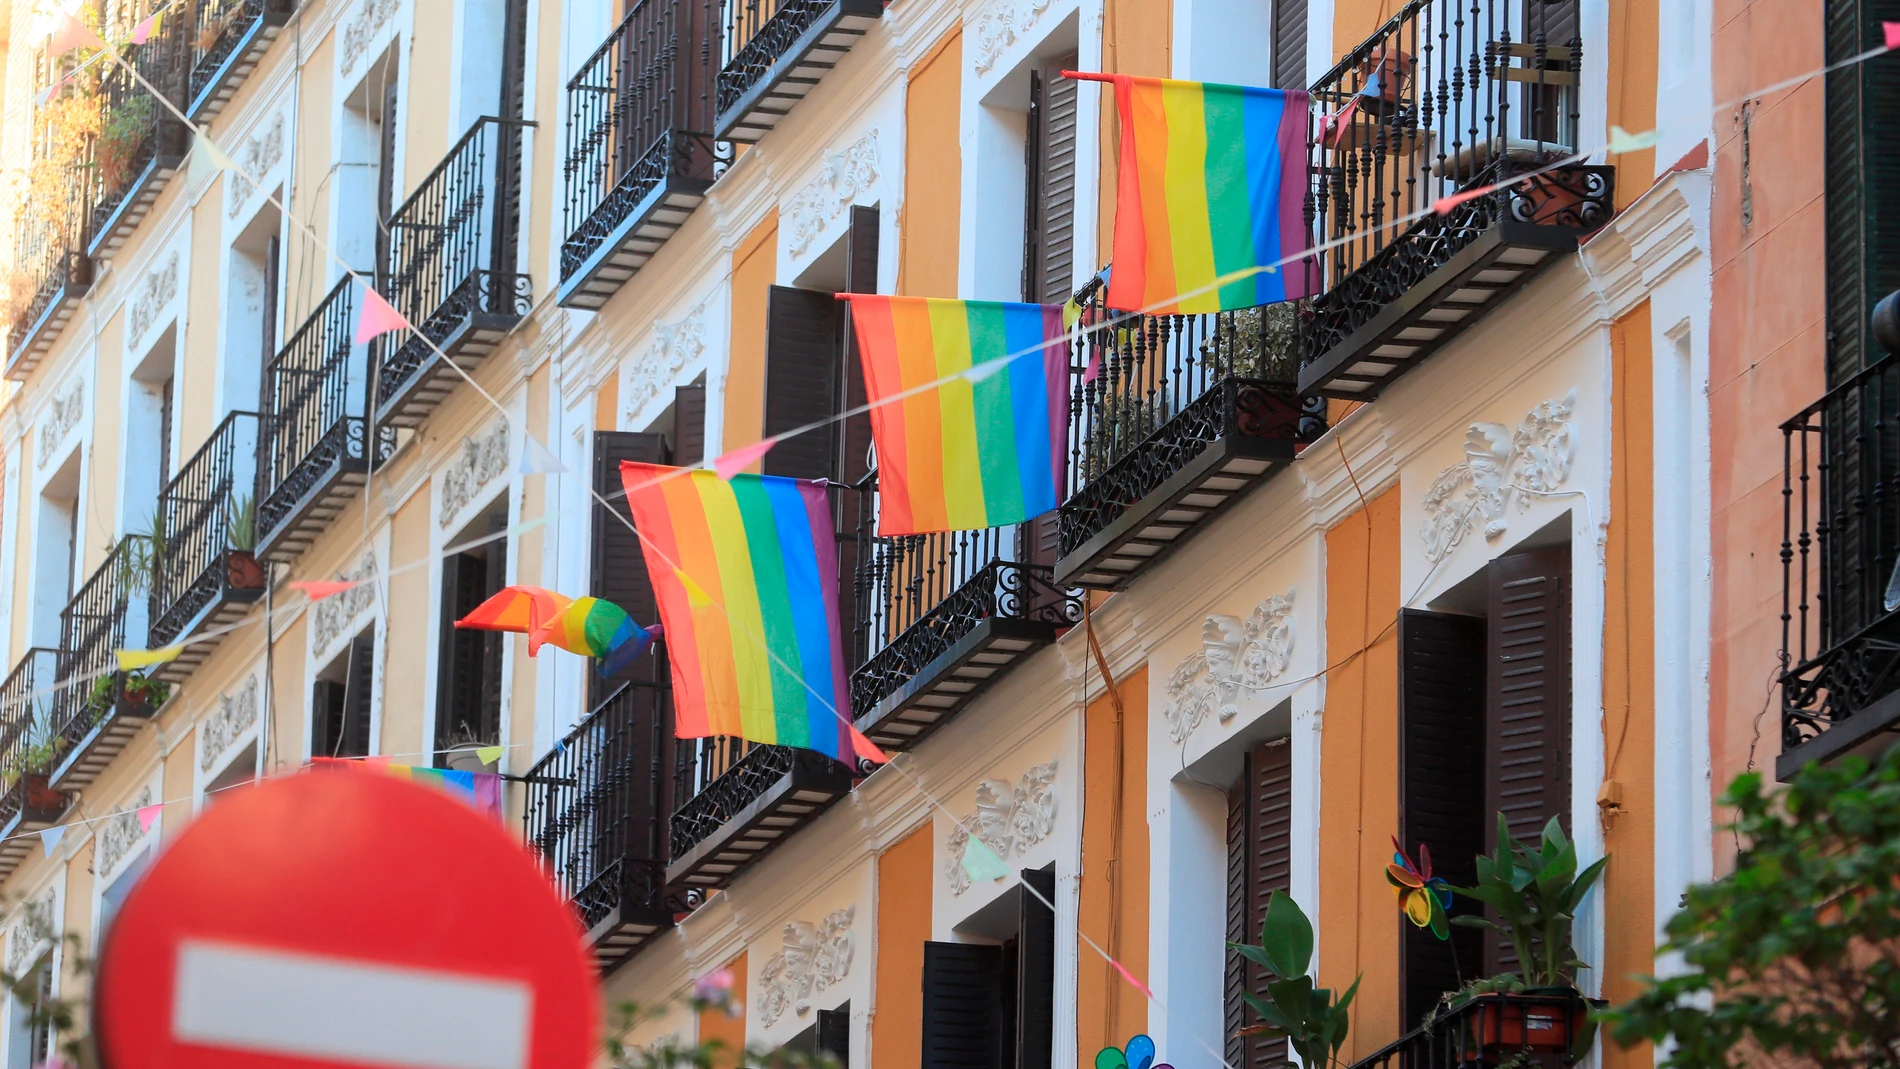 Banderas del colectivo LGTBI adornan balcones del barrio madrileño de Malasaña